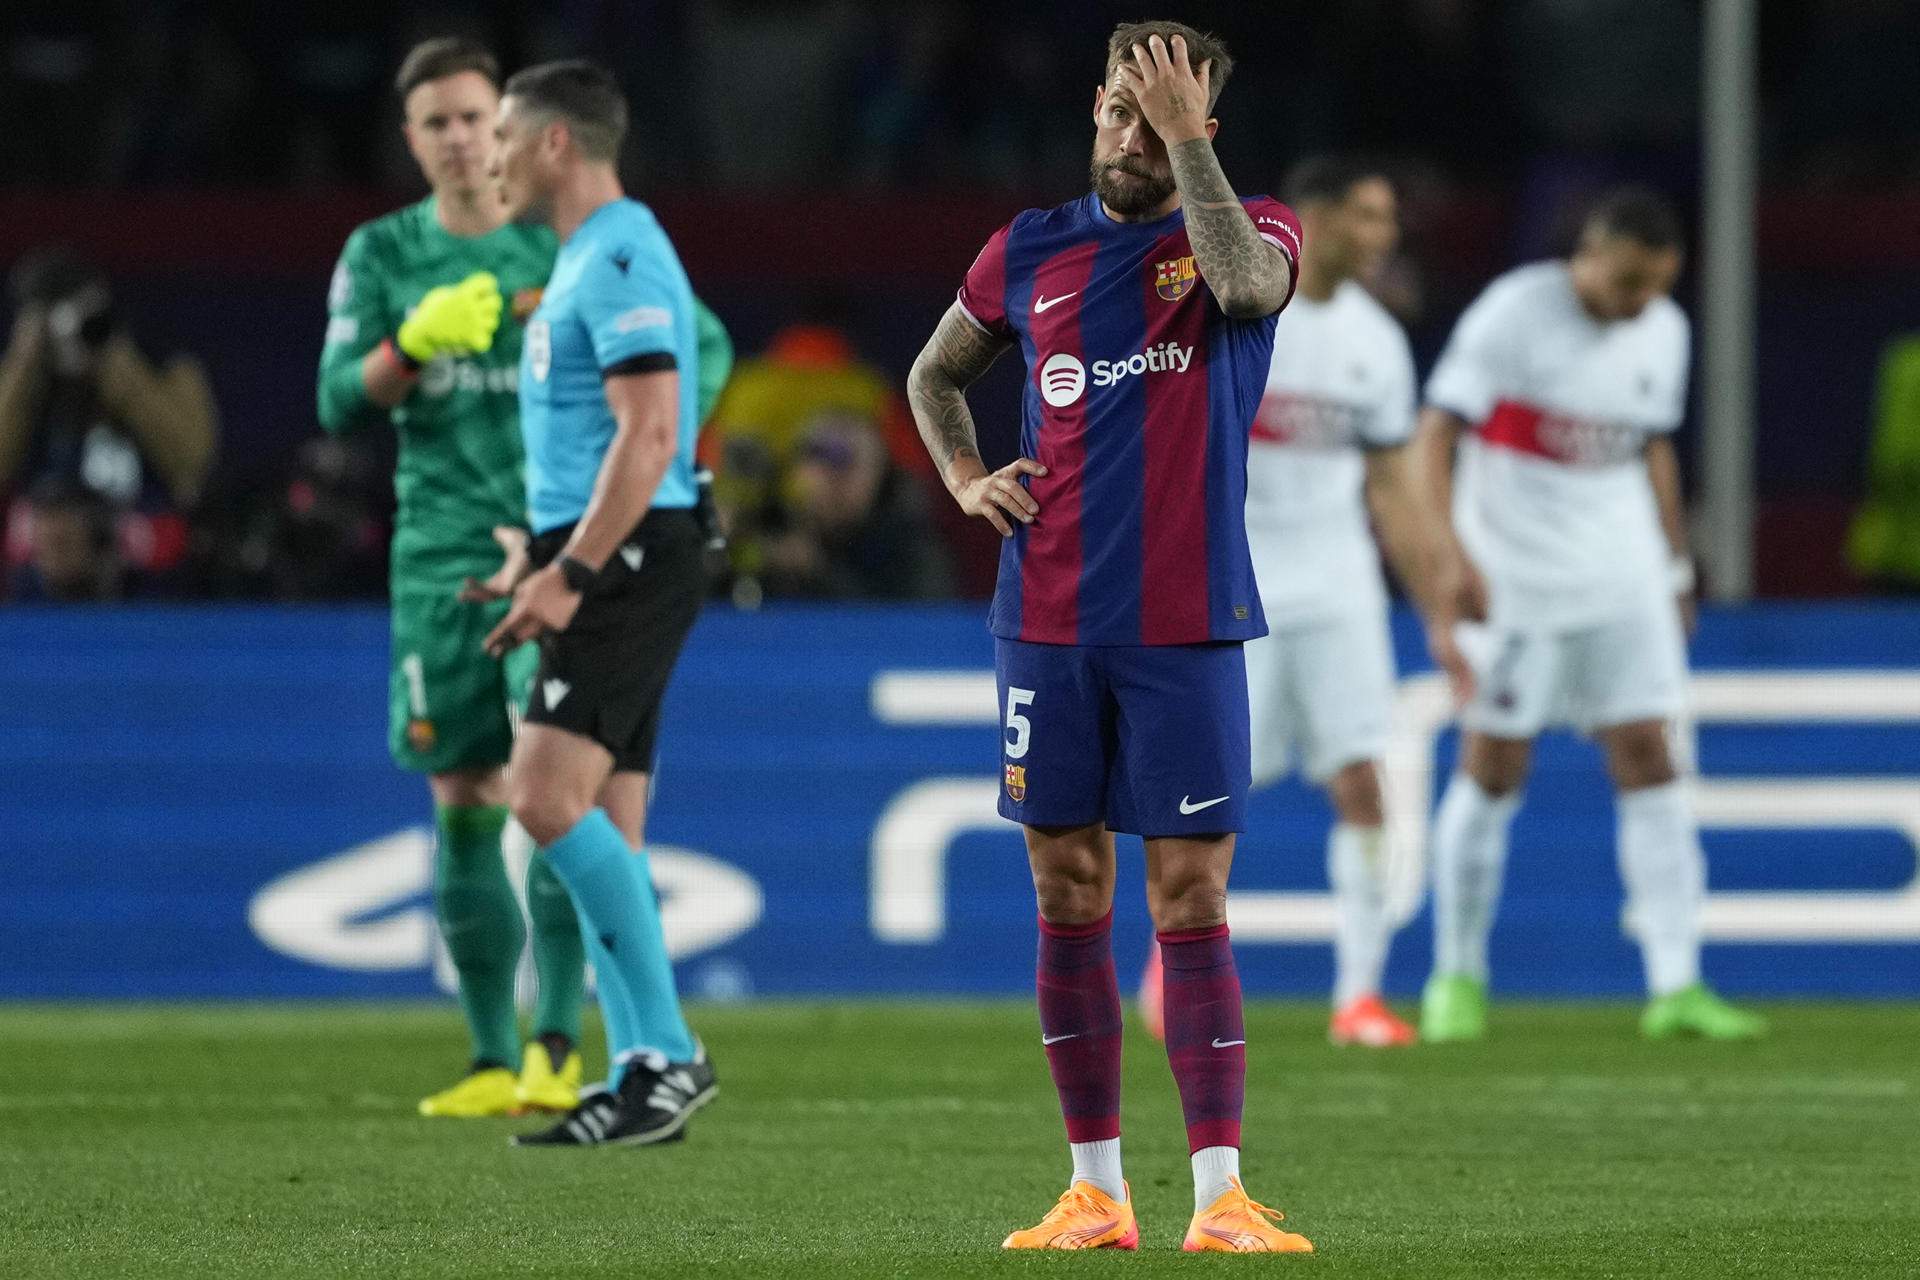 El Barça cae eliminado de la Champions contra el PSG (1-4) en un partido marcado por la expulsión de Araujo